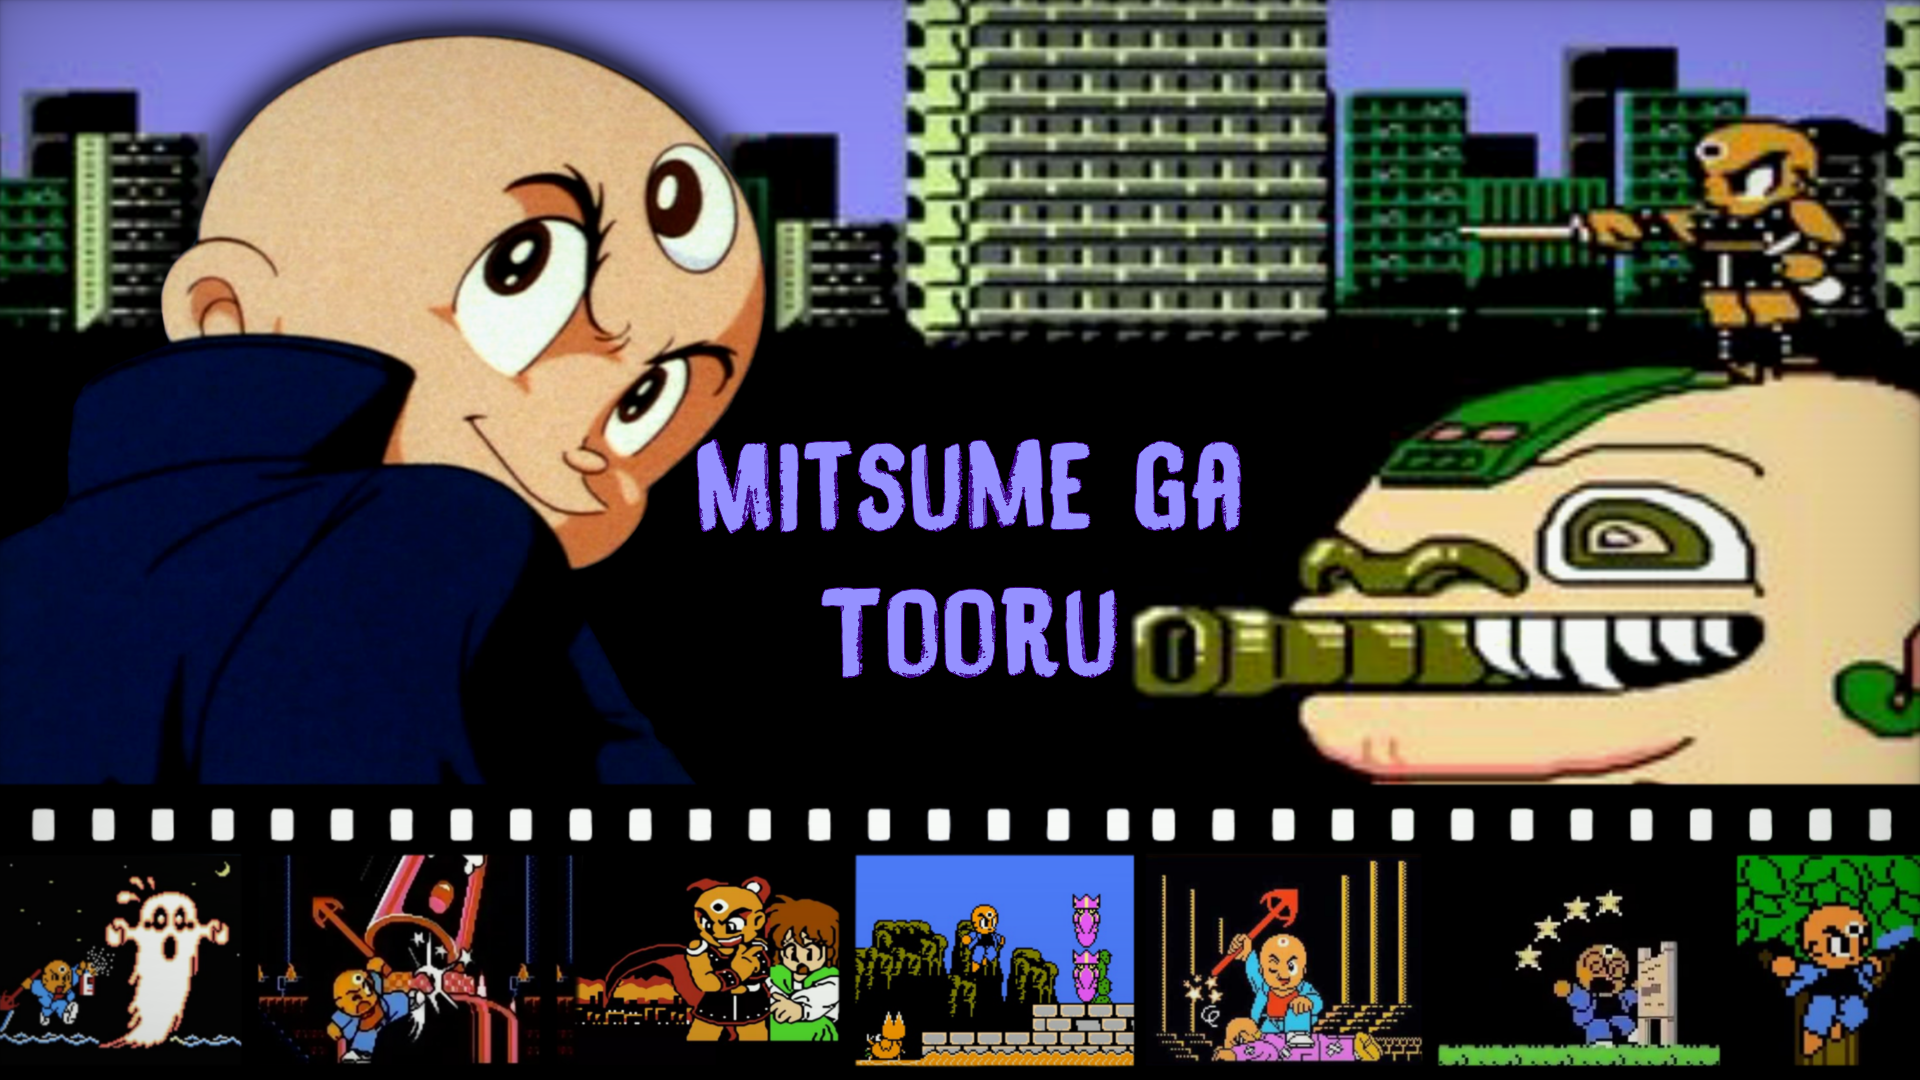 ТРЕТИЙ ГЛАЗ - ВСЕМ АТАС! ➤ Mitsume ga Tooru / 3 Eyes Boy [NES] Денди